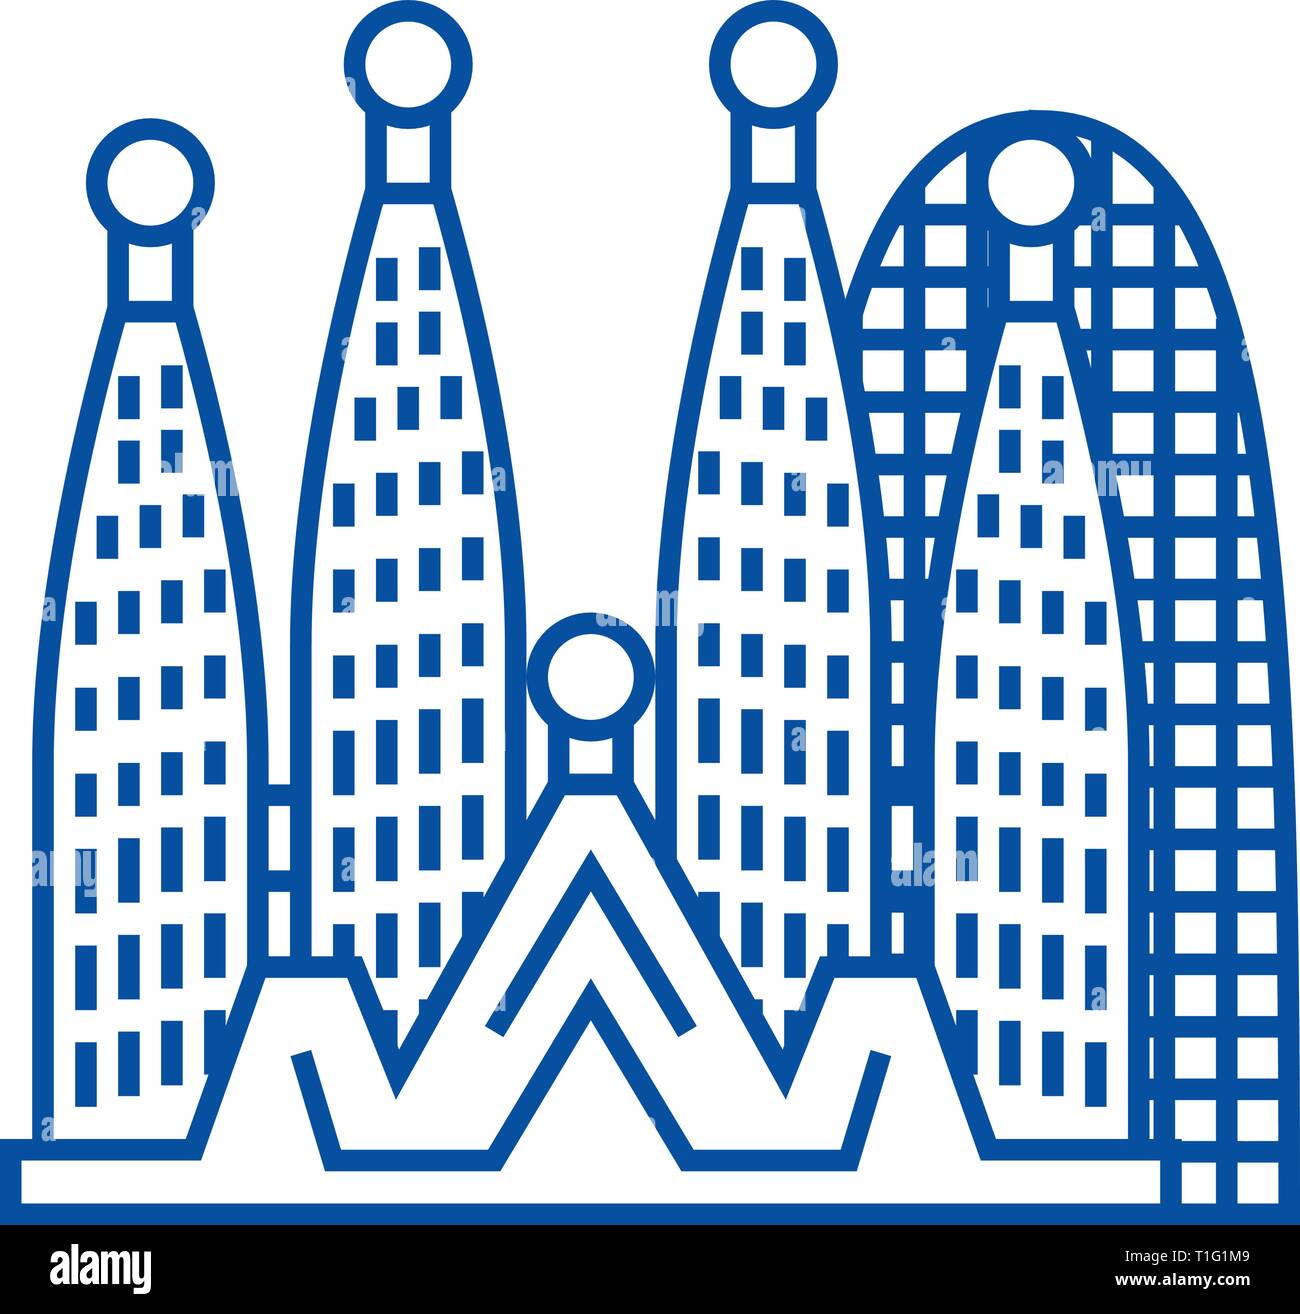 Barcelone sagrada familia,icône ligne concept. Barcelone sagrada familia,télévision, signe, symbole vecteur illustration contour. Illustration de Vecteur